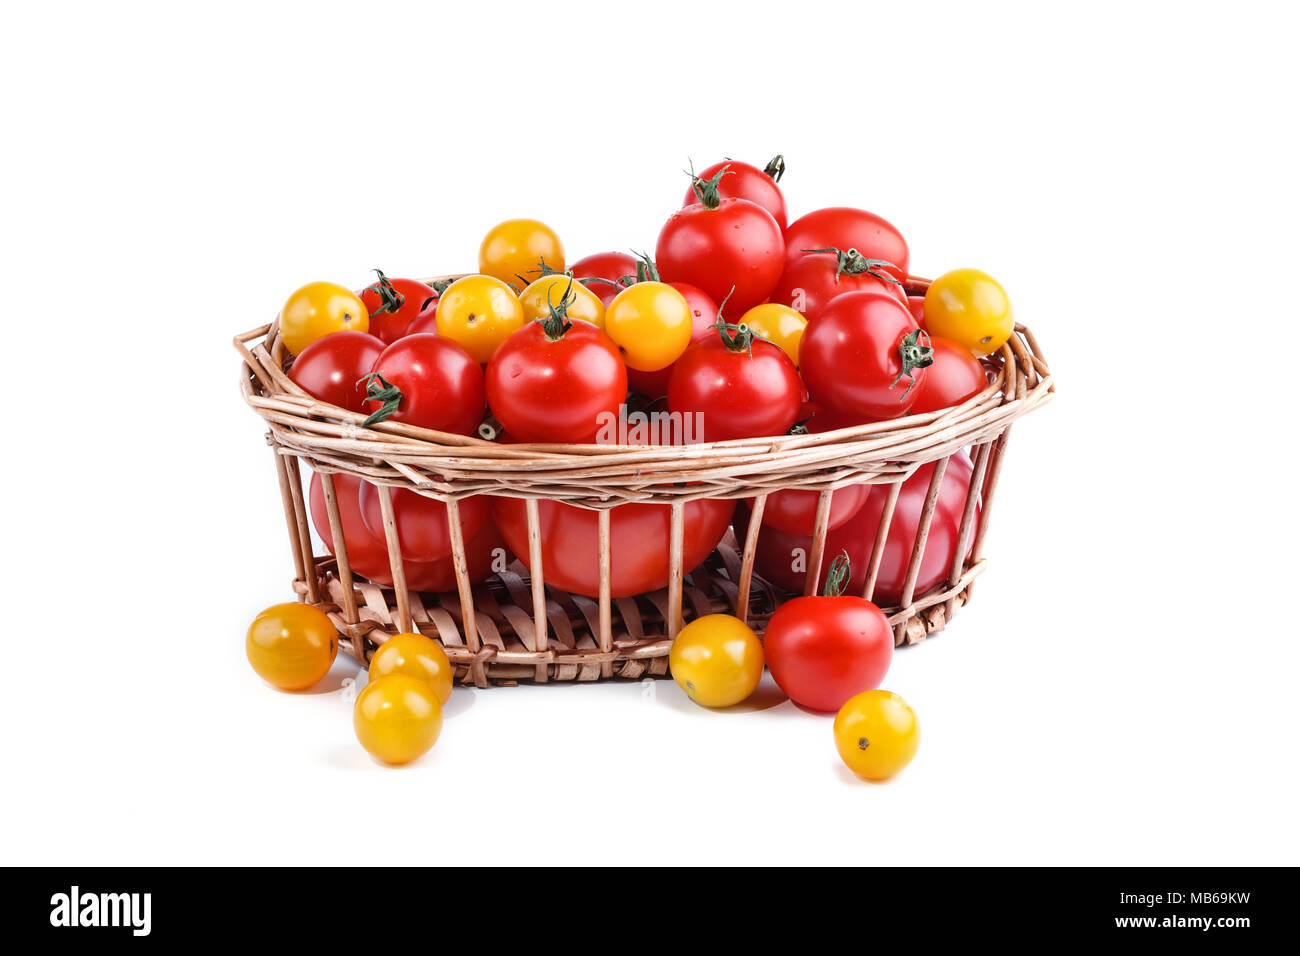 Il giallo e il rosso dei pomodori giacciono nel cesto su uno sfondo bianco. Foto Stock